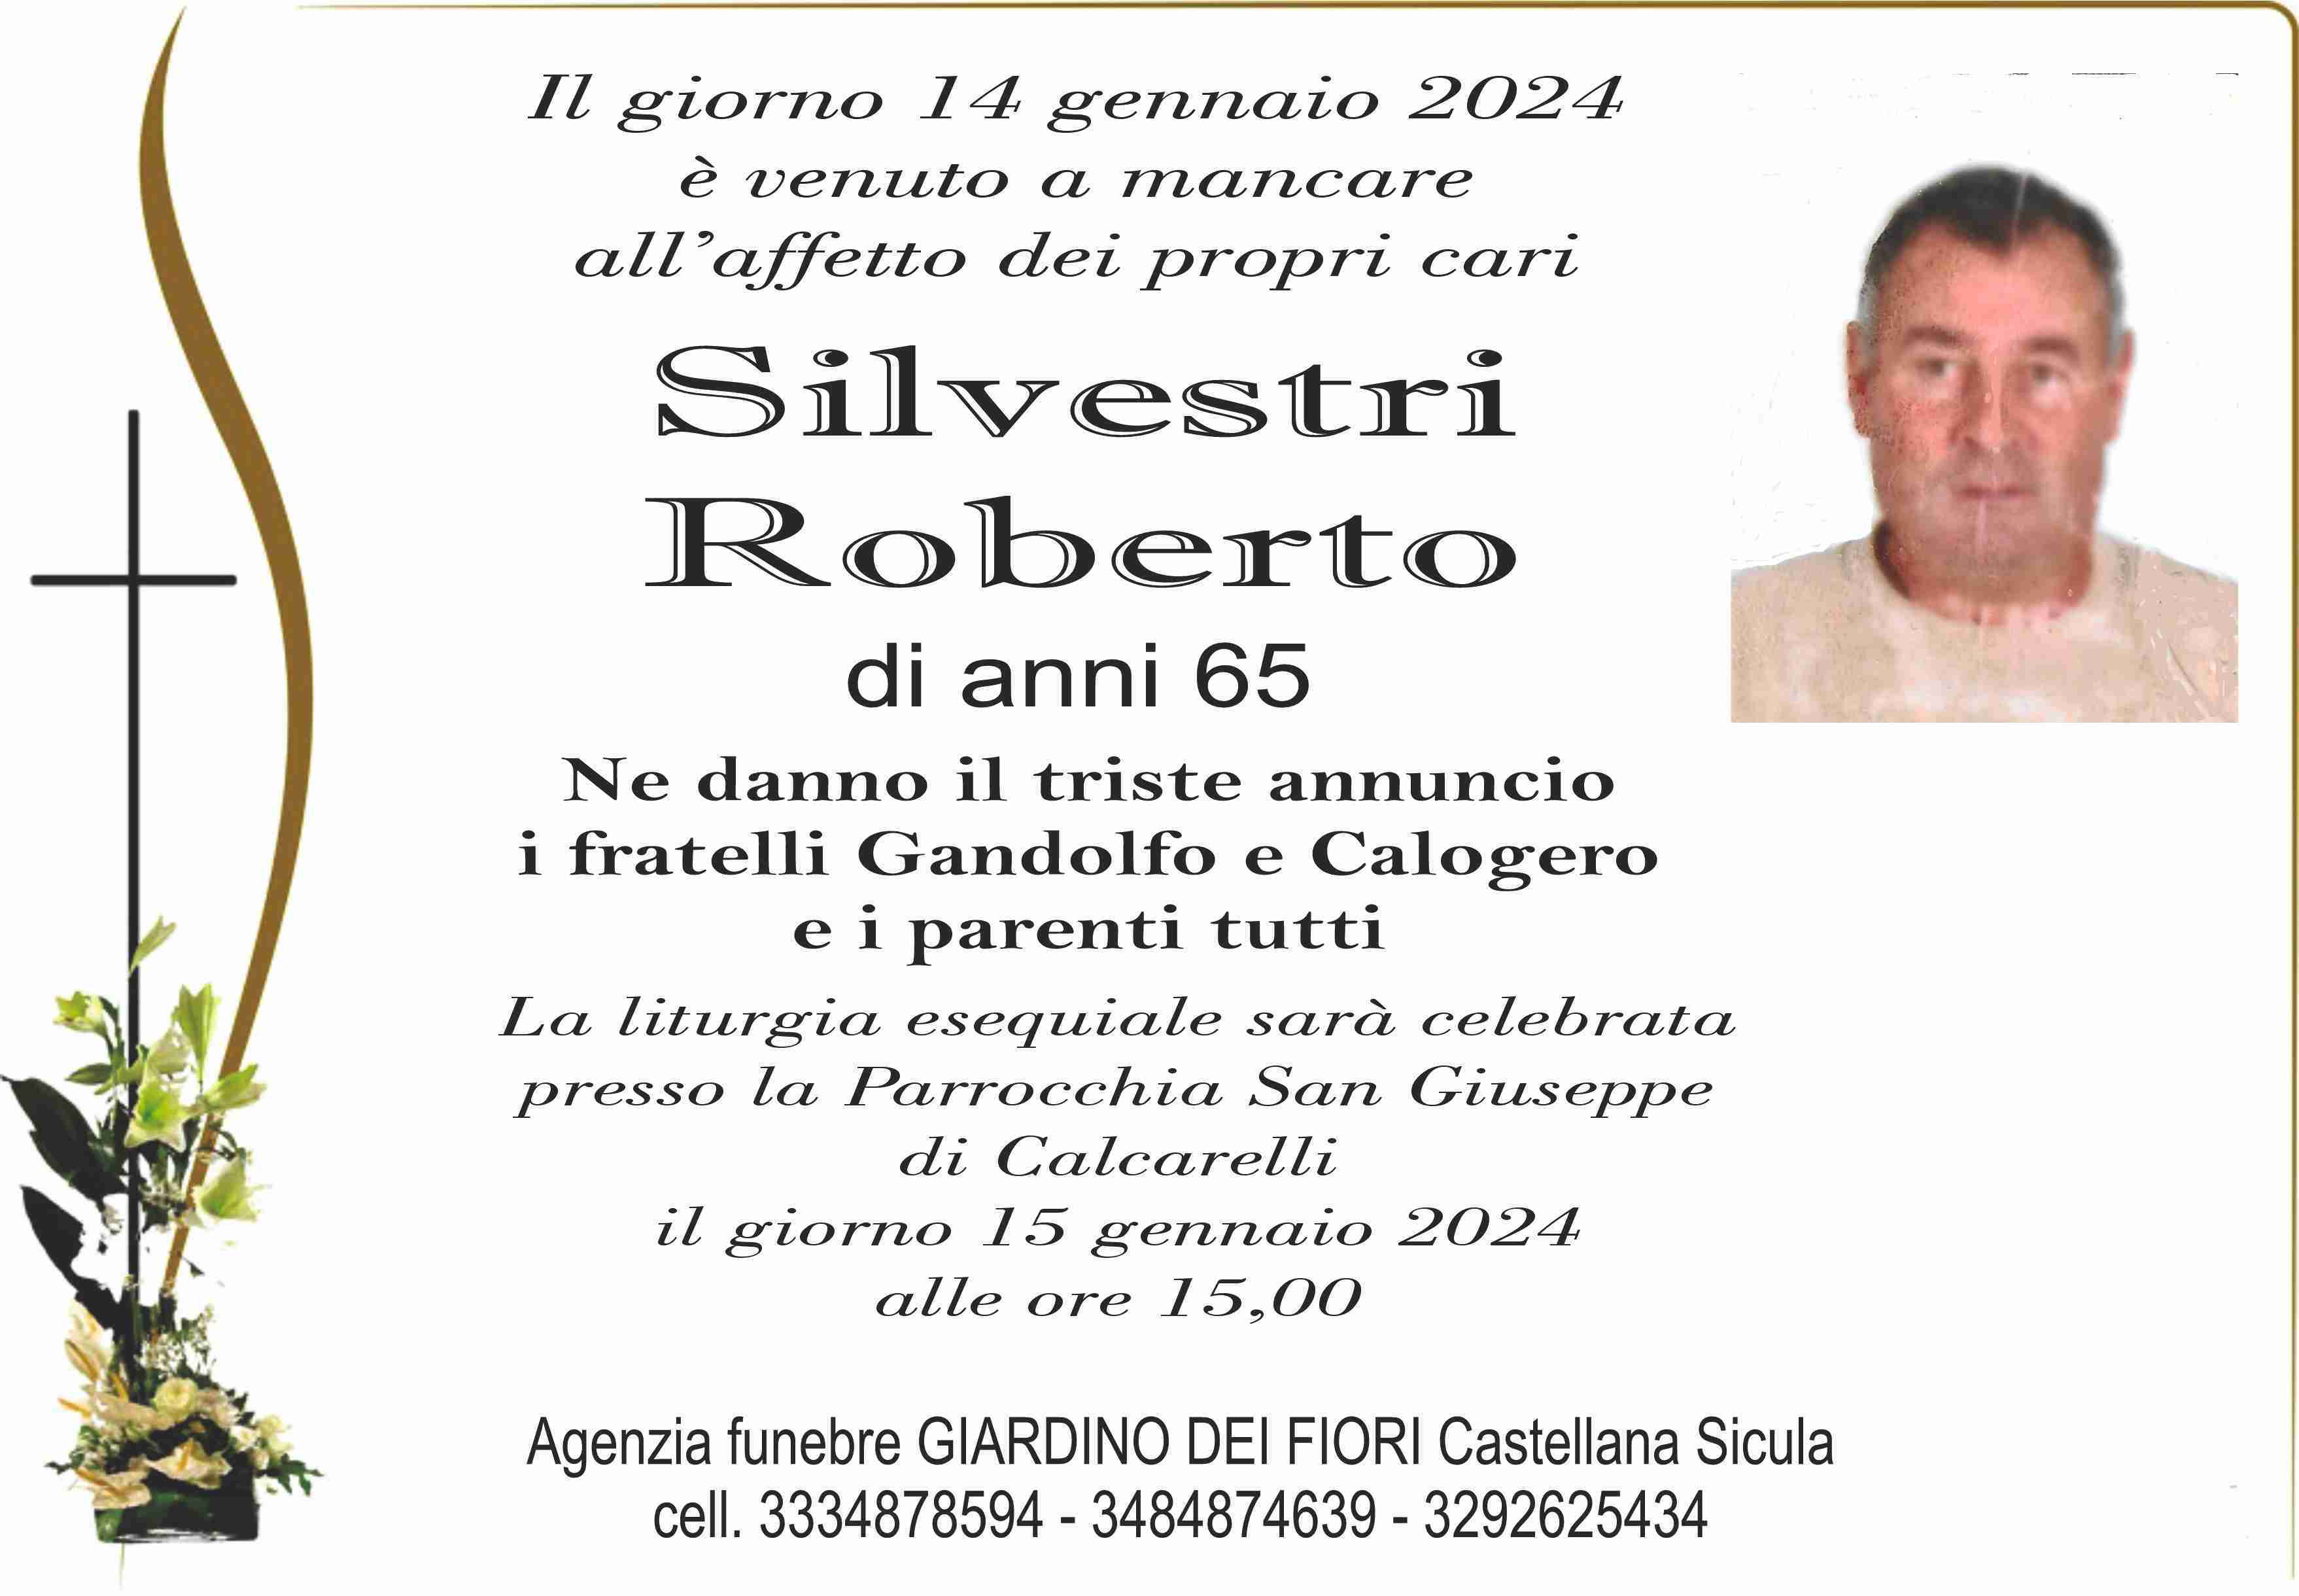 Roberto Silvestri